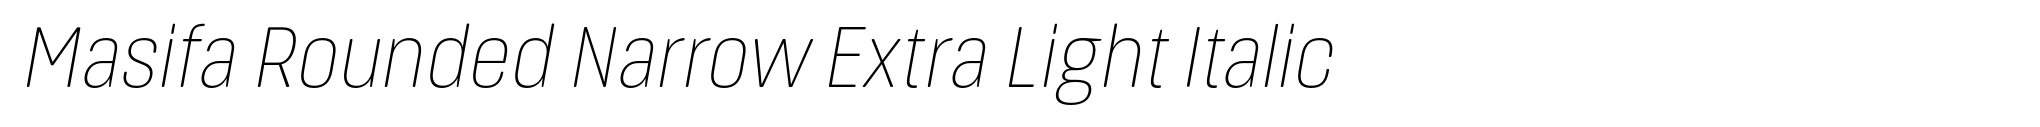 Masifa Rounded Narrow Extra Light Italic image